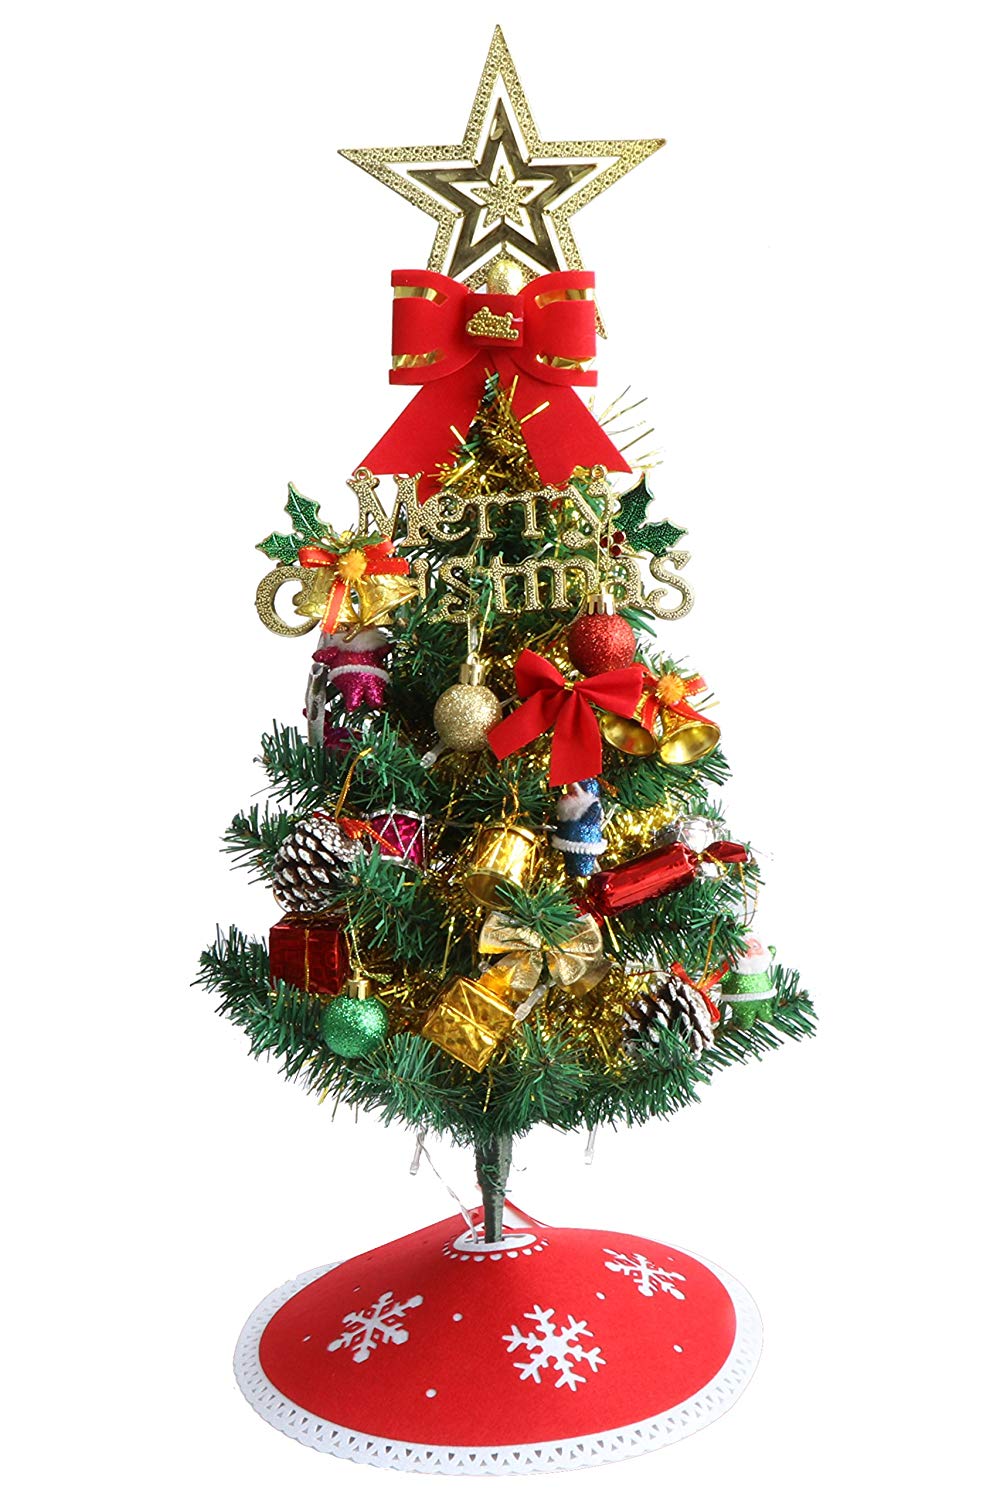 お洒落でかわいい 通販で買えるおすすめのクリスマスツリー特集 ピュアラモ Purelamo あなたの生活にかわいいを届ける